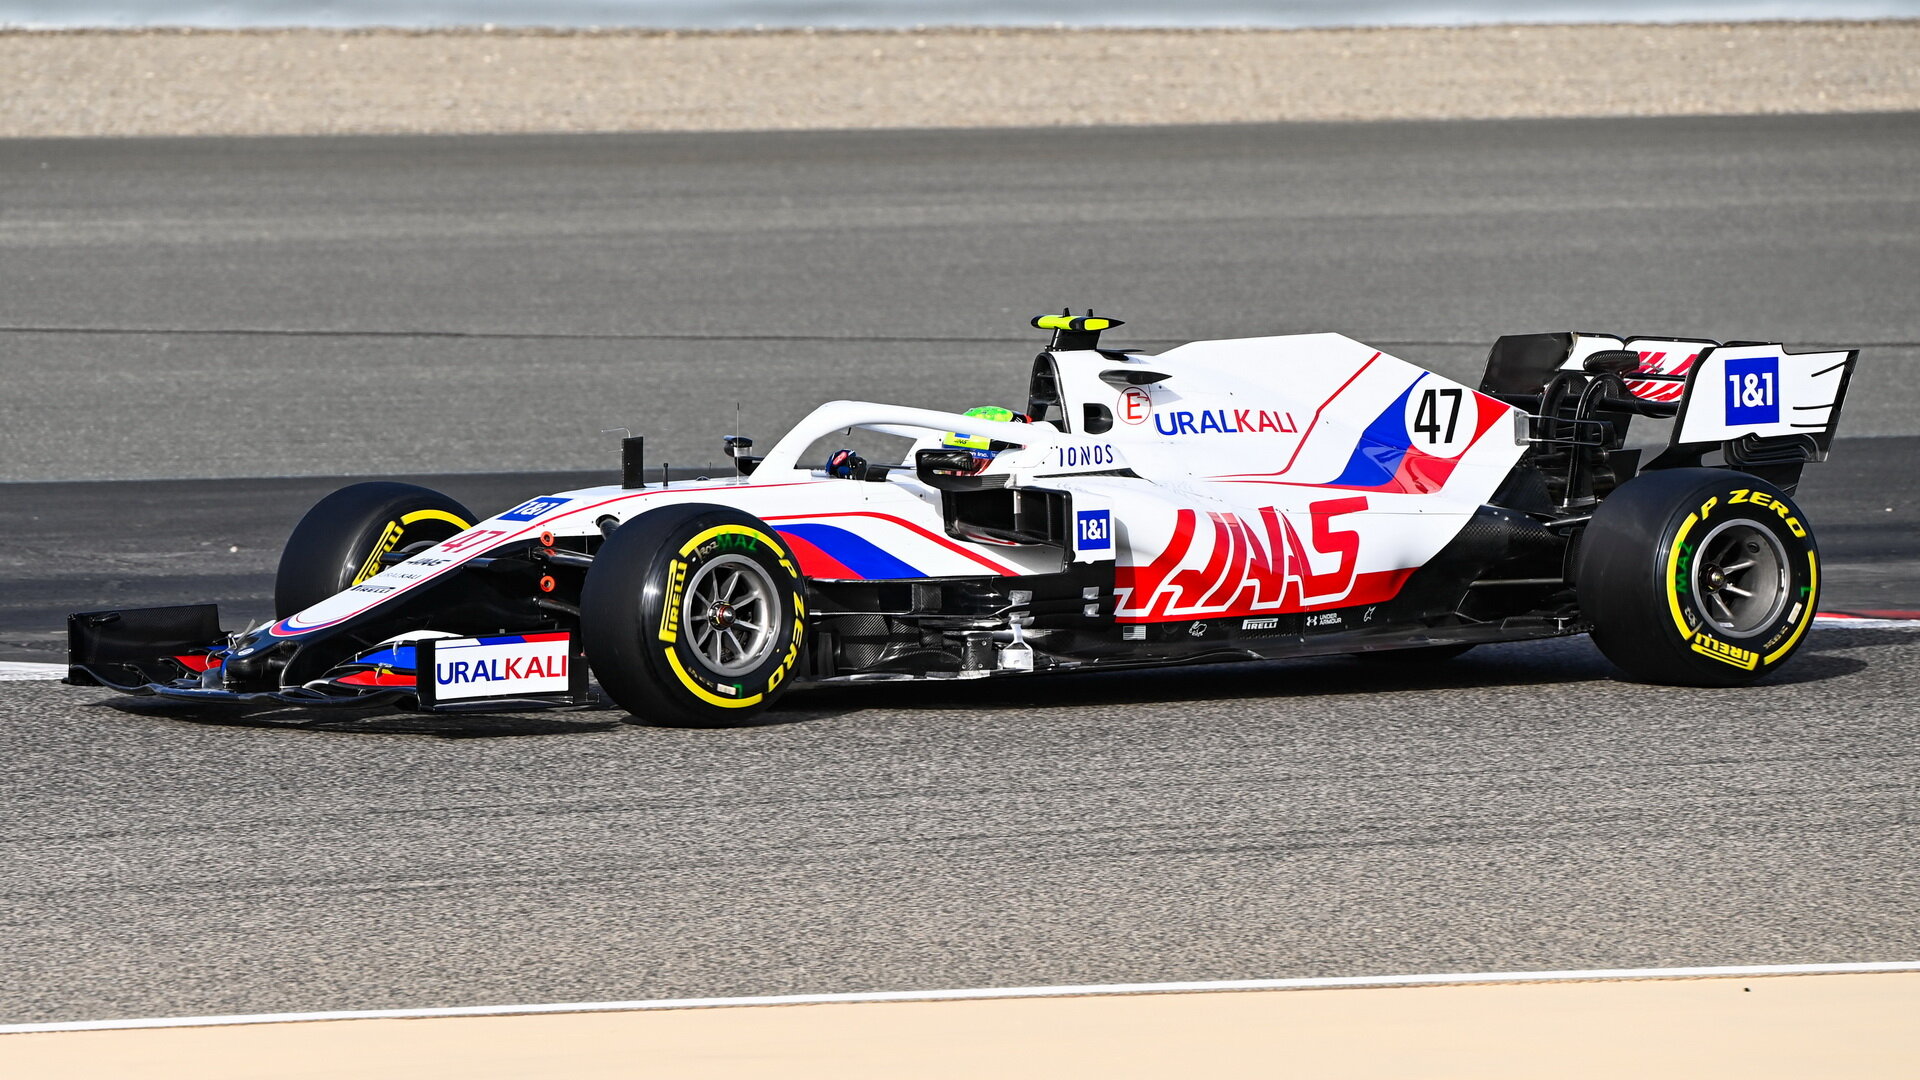 Mich Schumacher - 2. den předsezonních testů v Bahrajnu